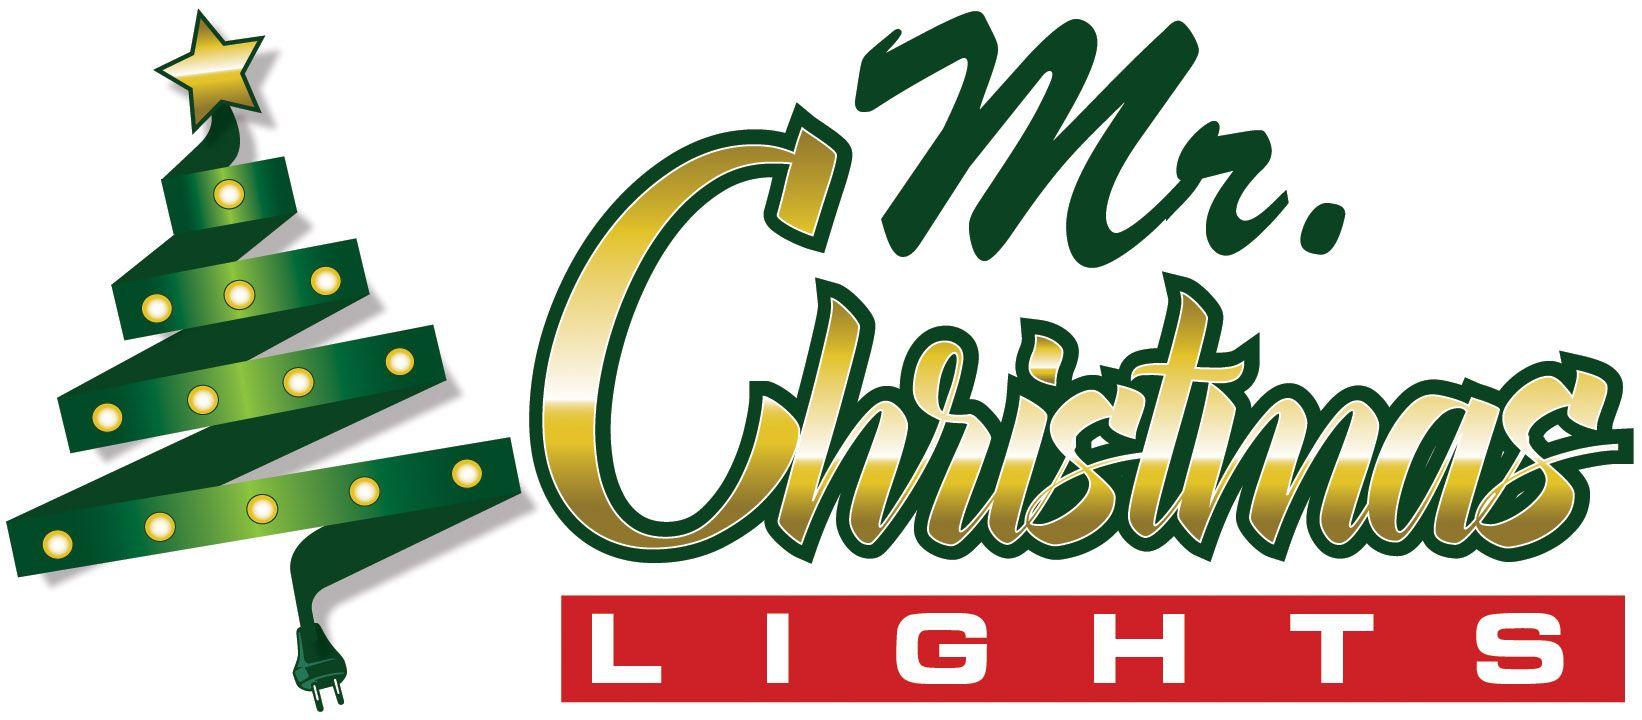 Christmas Lights Logo - Mr Christmas Lights. Christmas Lights for the Greater Miami